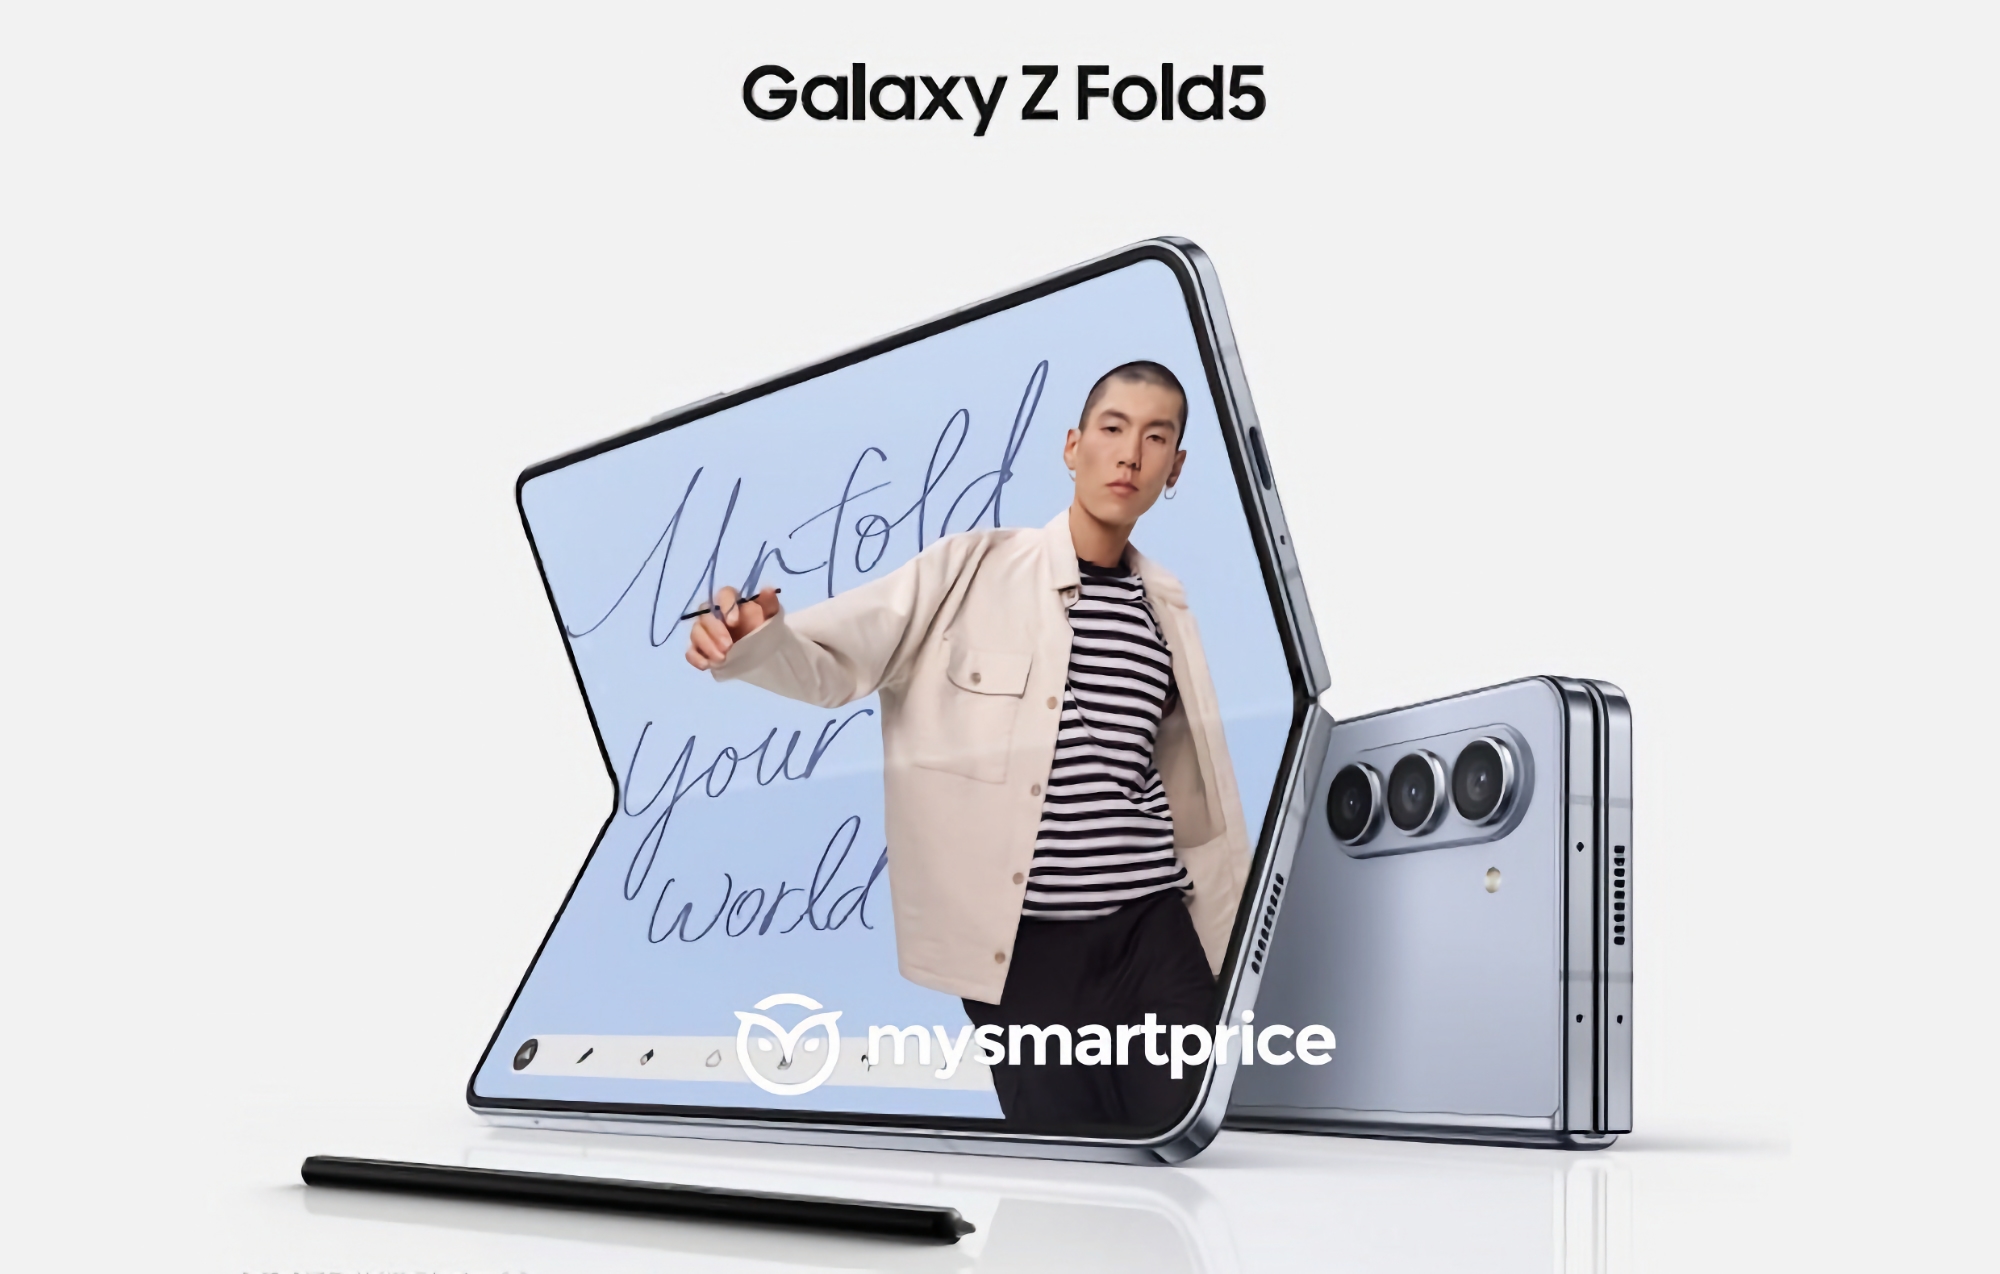 Minimale Veränderung: Das erste offizielle Bild des Samsung Galaxy Fold 5 Smartphones ist online aufgetaucht